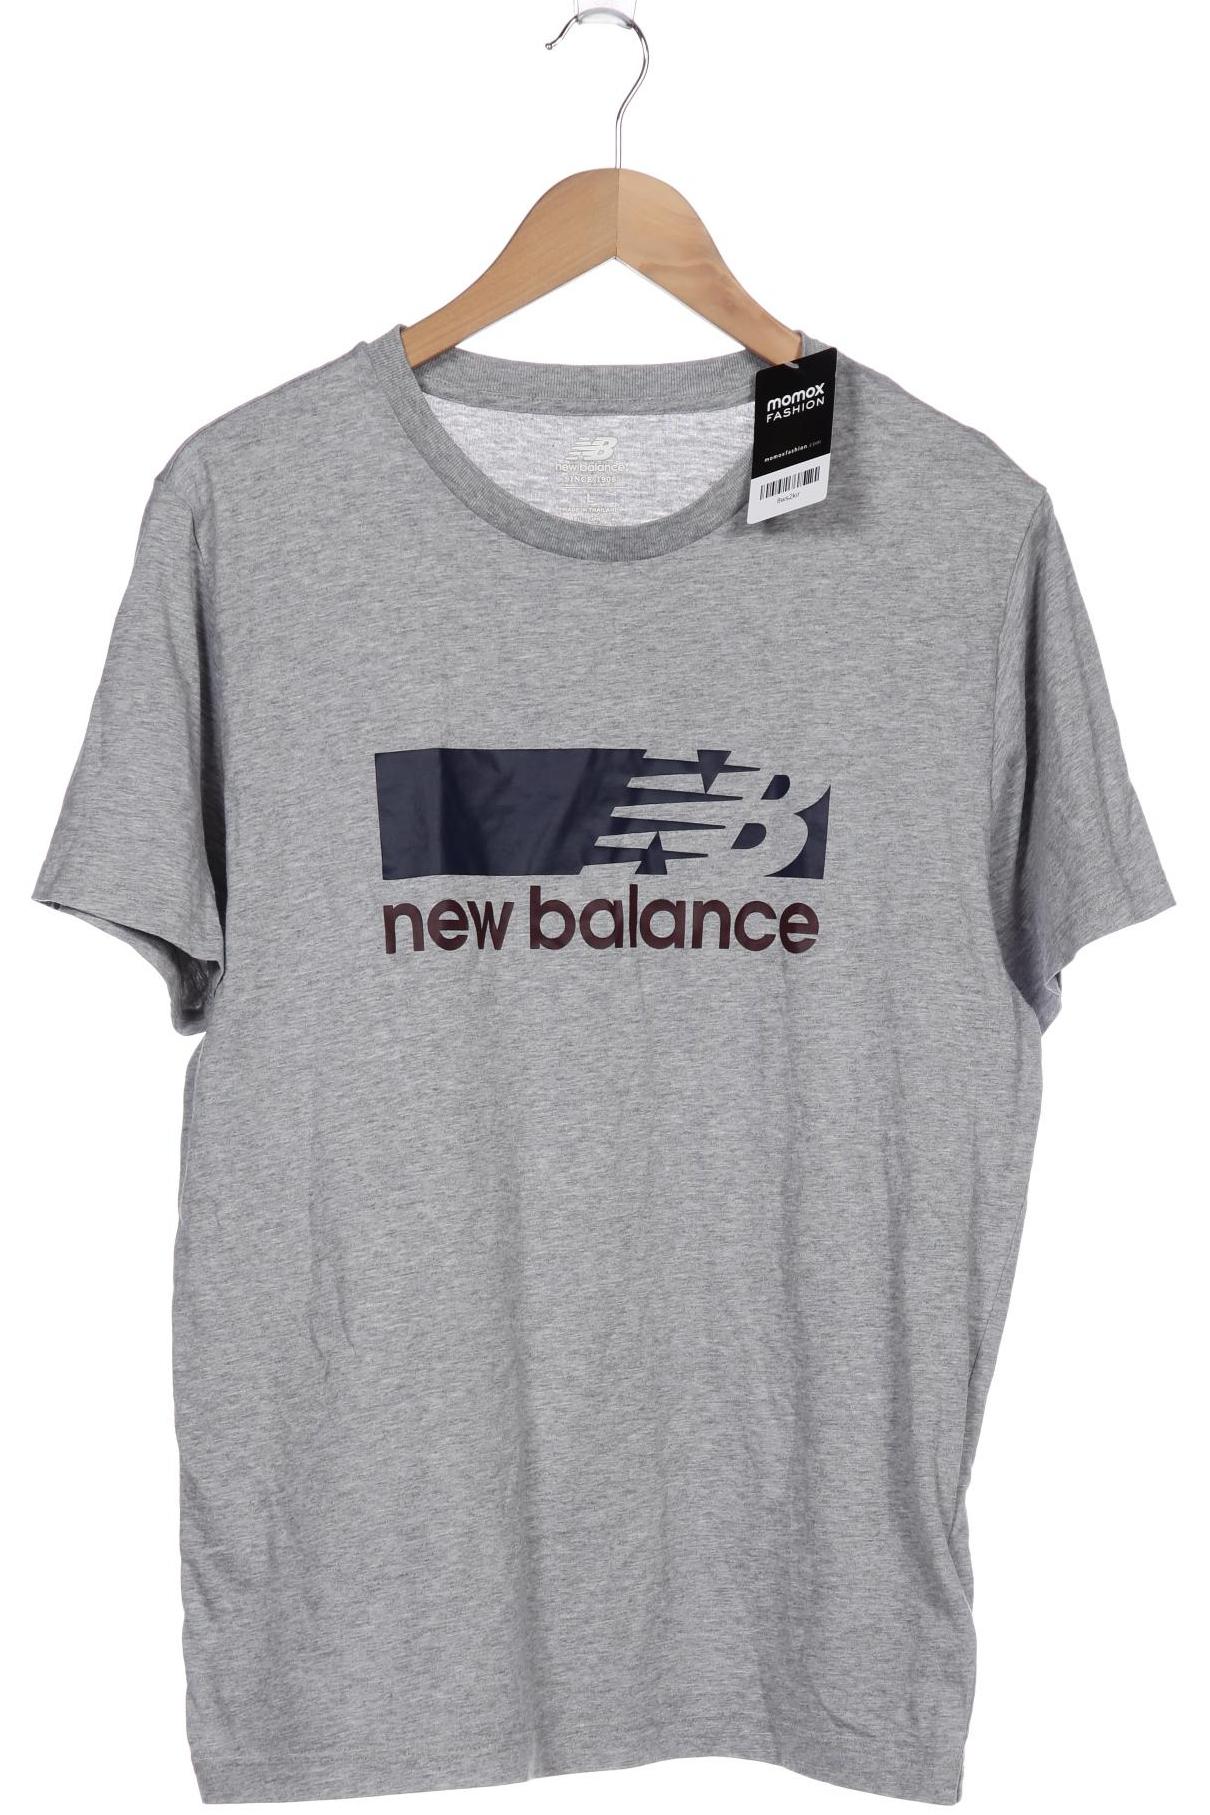 New Balance Herren T-Shirt, grau von New Balance